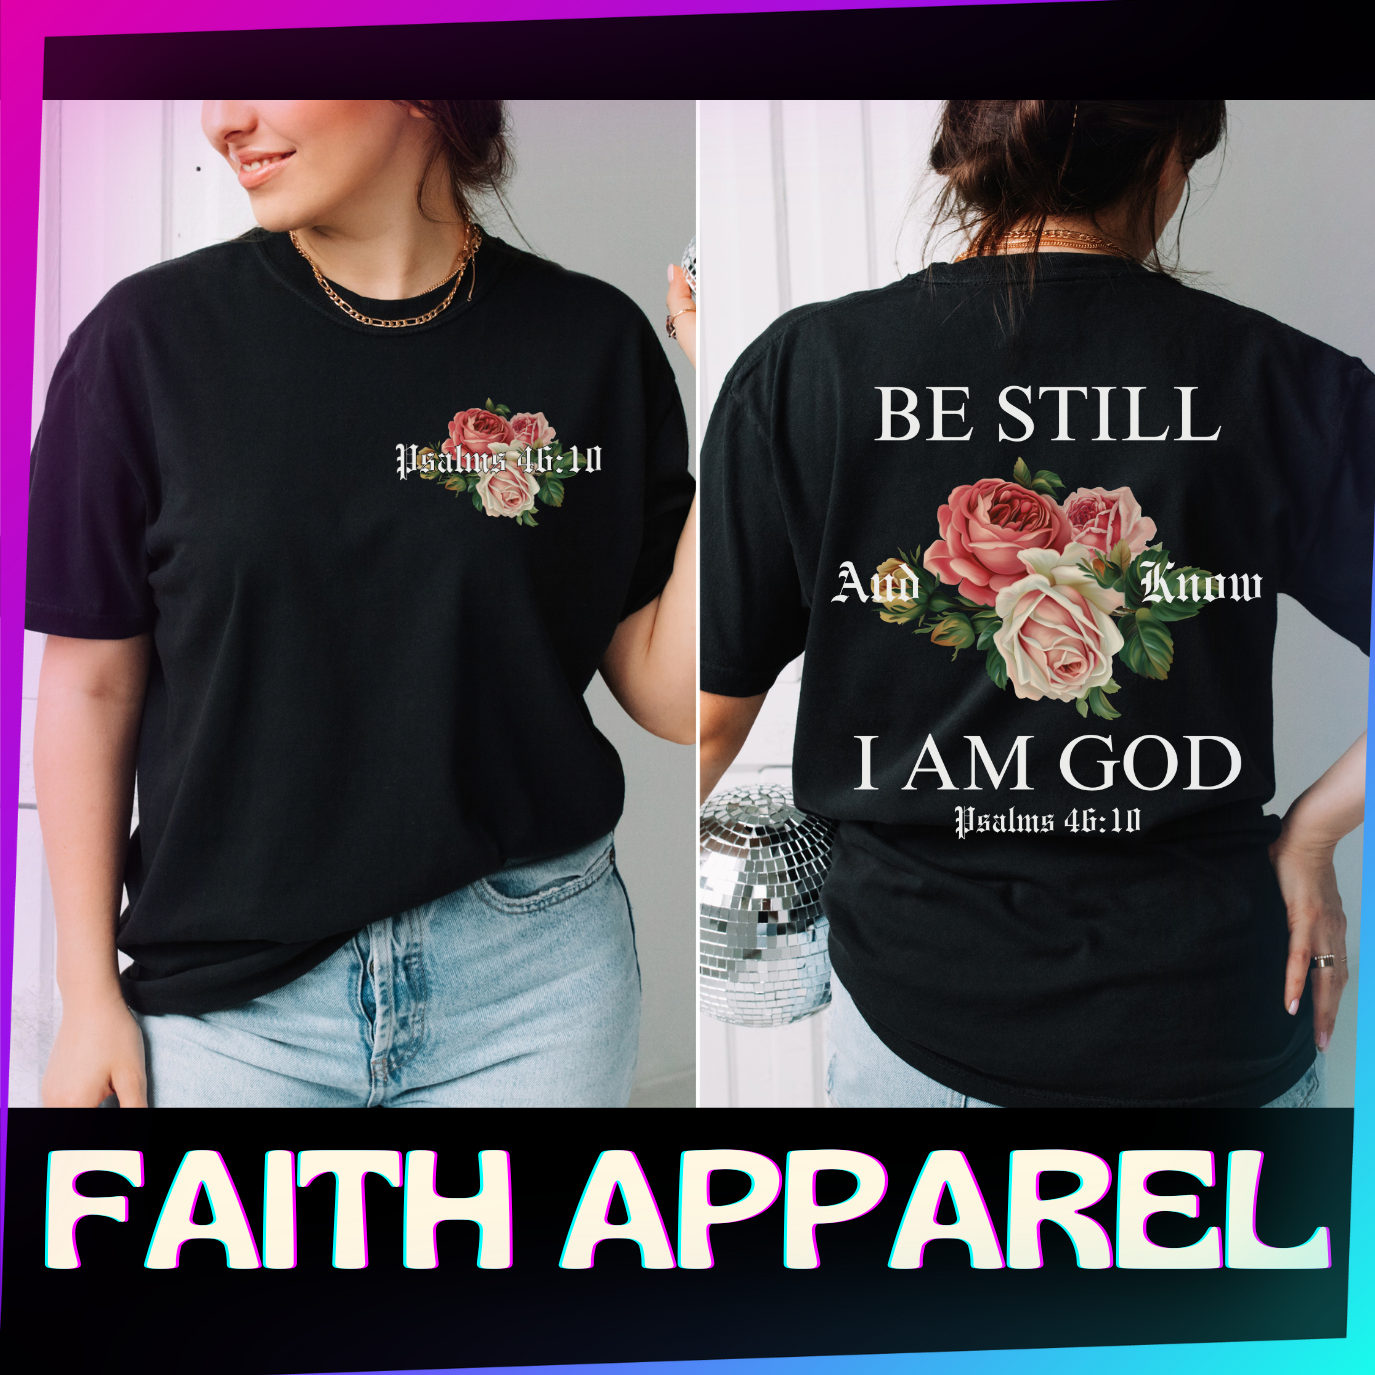 FAITH APPAREL